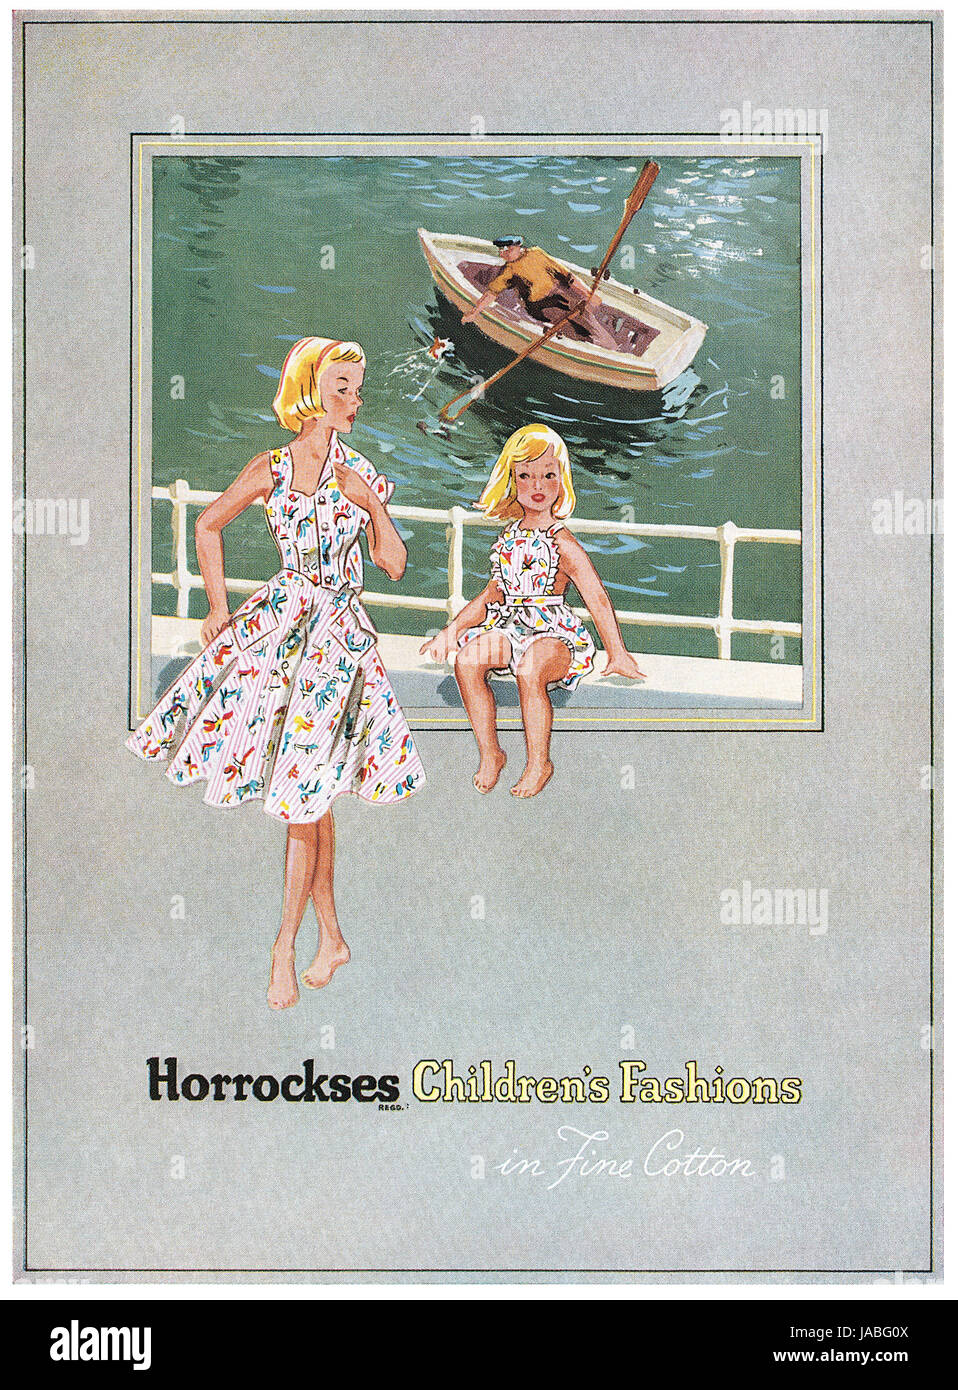 1951 British pubblicità per bambini Horrockses's mode. Foto Stock